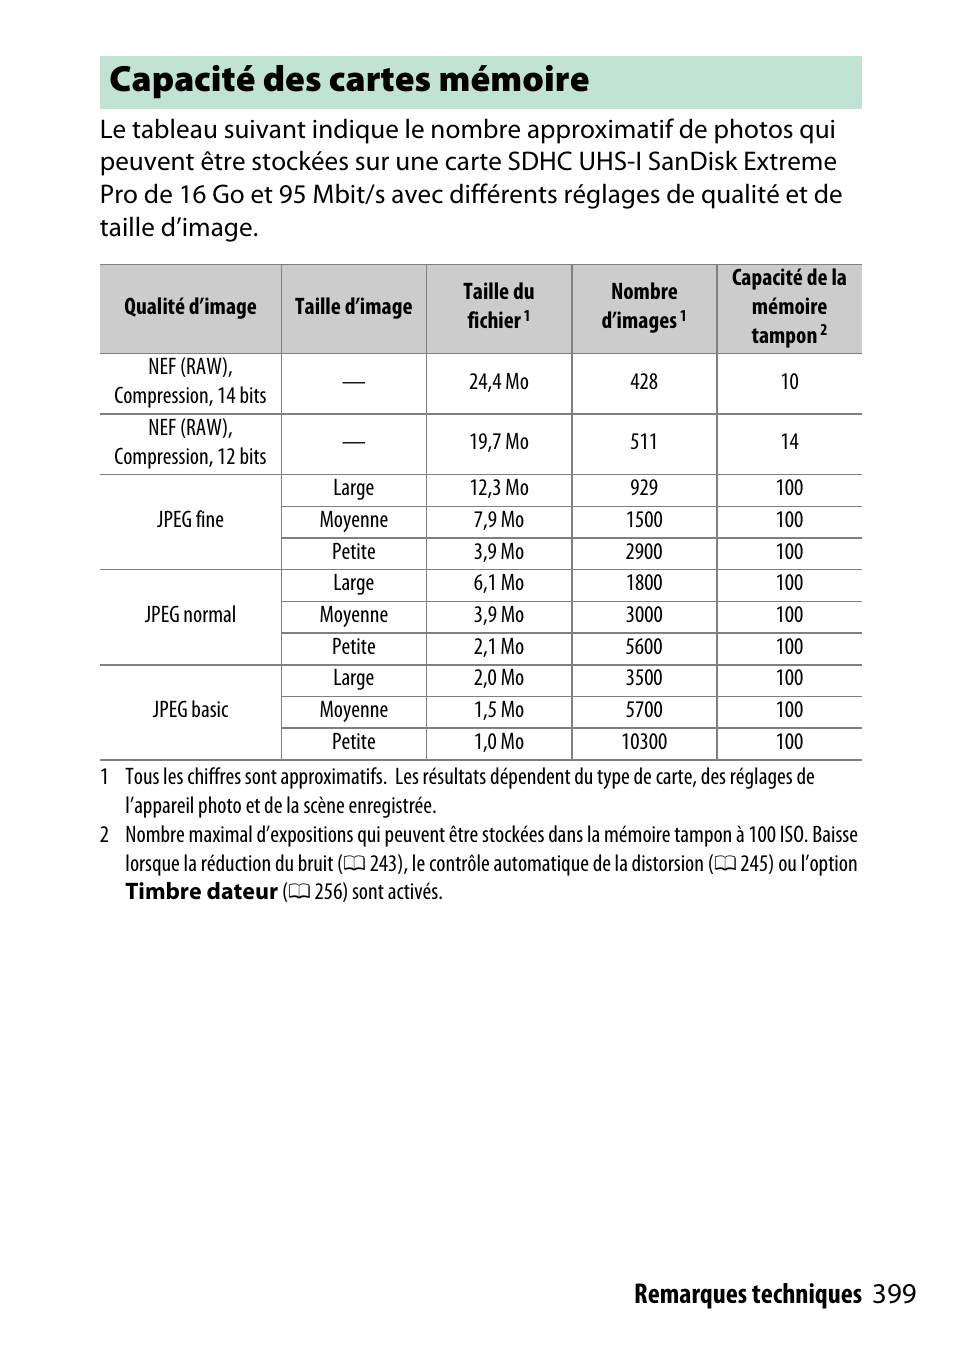 Capacité des cartes mémoire, 399 remarques techniques | Nikon D5500 Manuel d'utilisation | Page 423 / 436